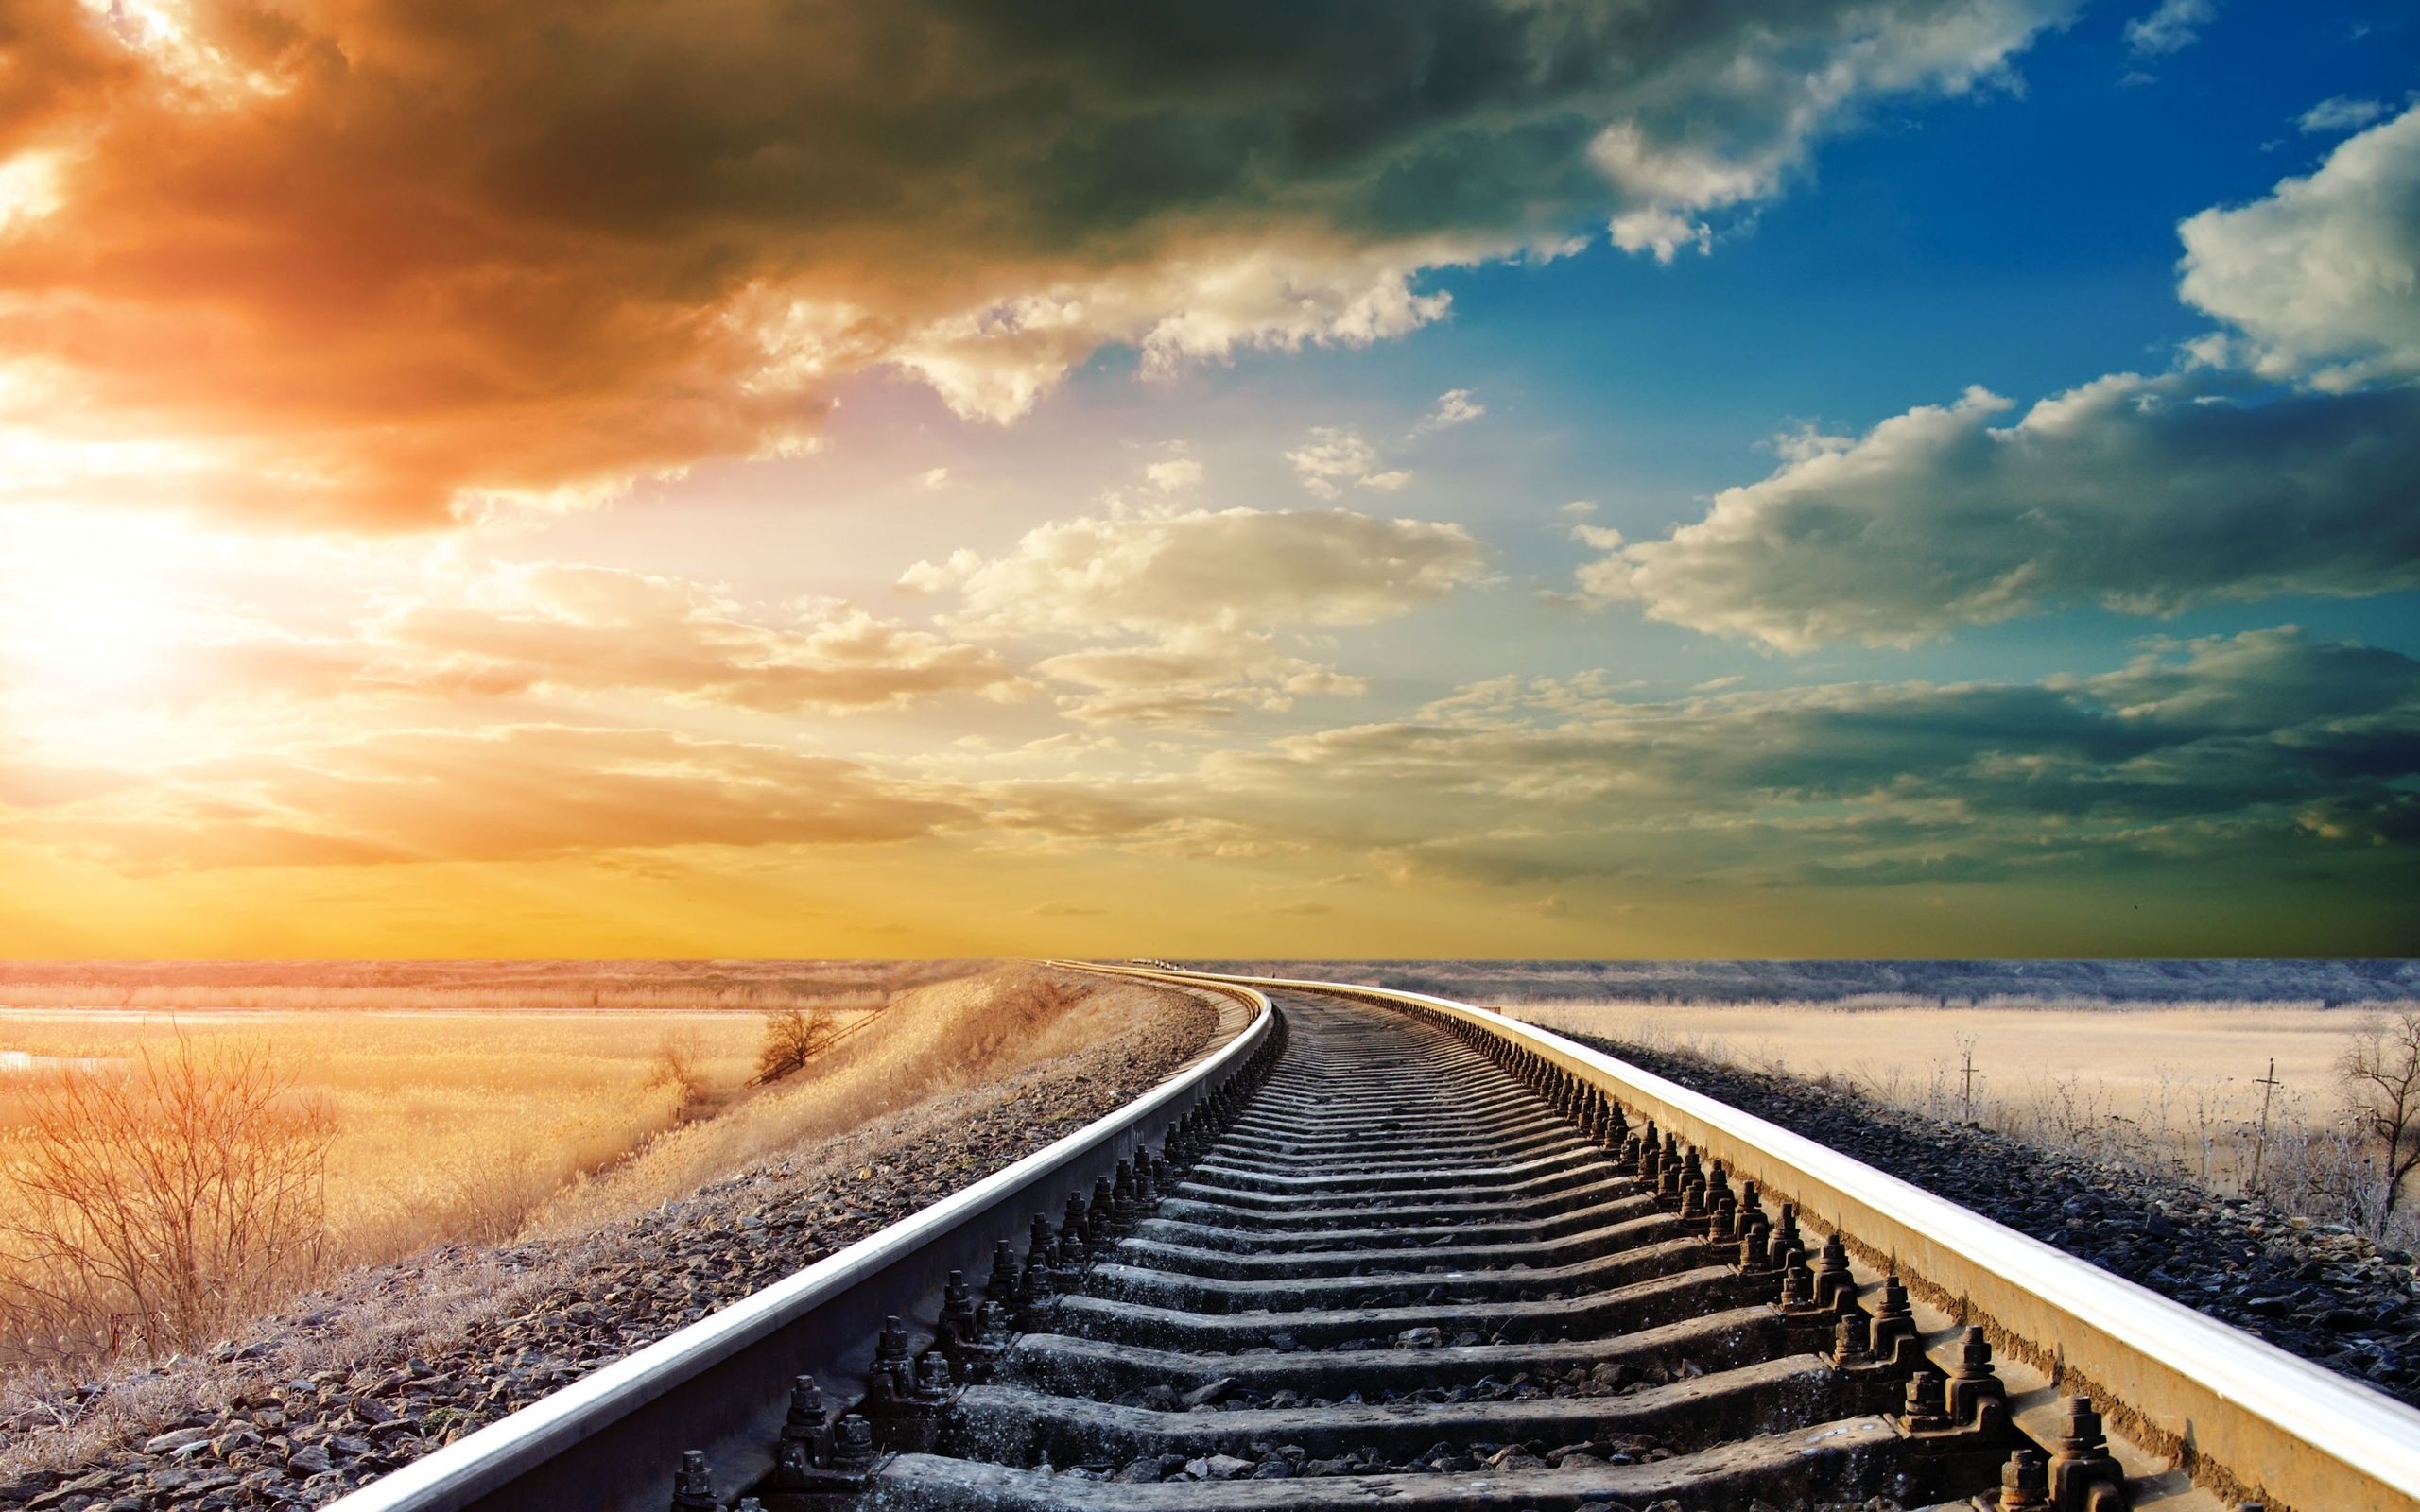 Fondos Vías de ferrocarril (Railroad Tracks) ADNFriki (10)